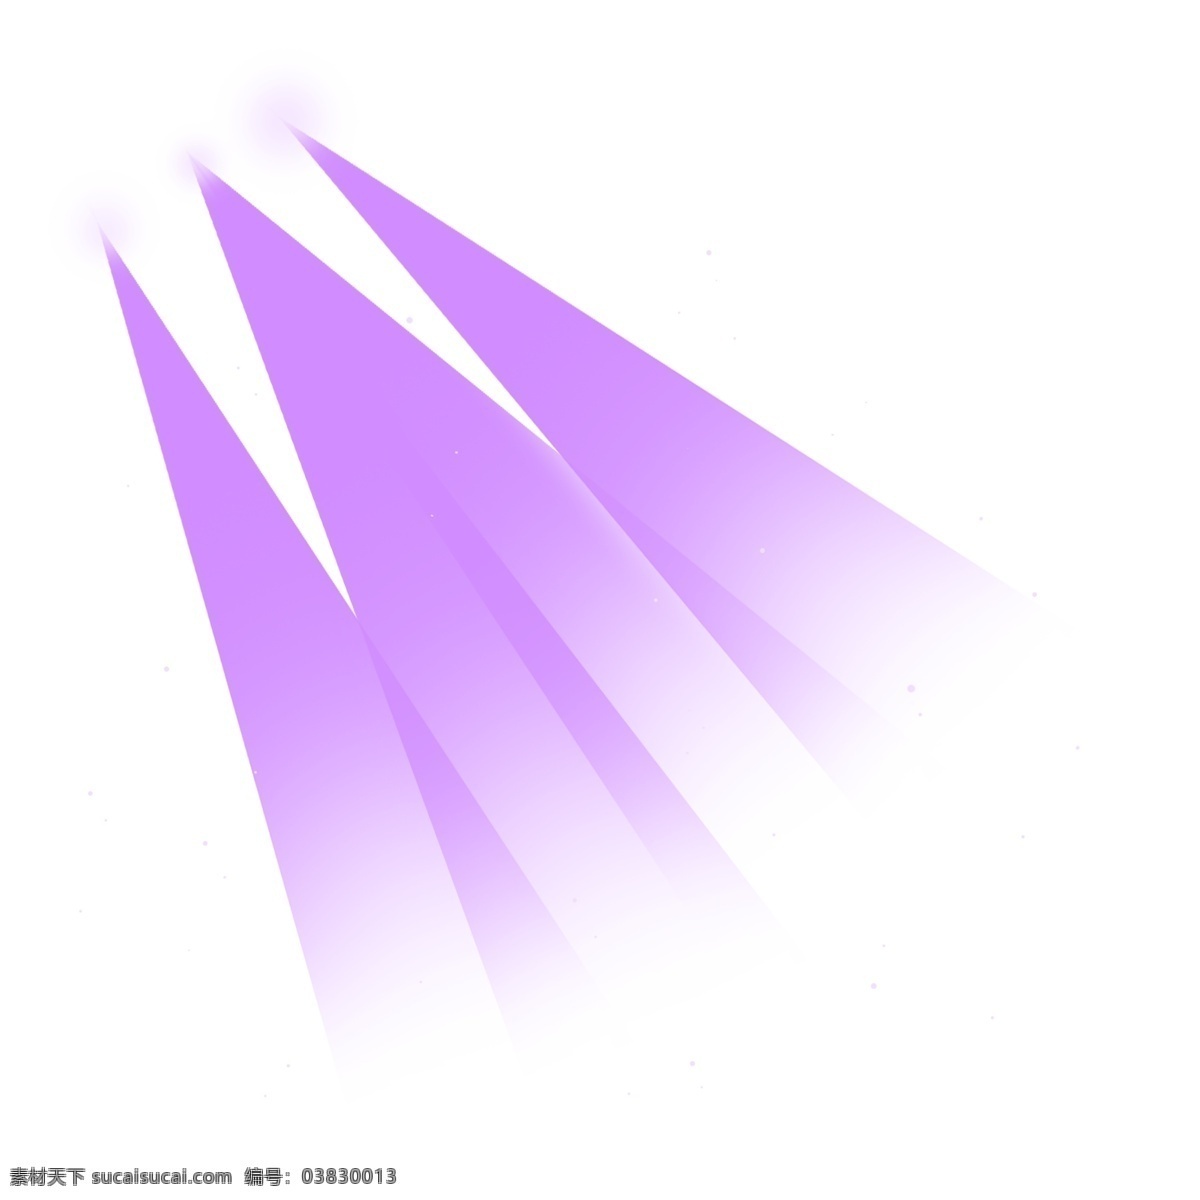 紫色 重叠 可爱 浪漫 光束 光 淡紫色 紫色光束 淡紫色光束 光线 射灯 射光 光明 治愈